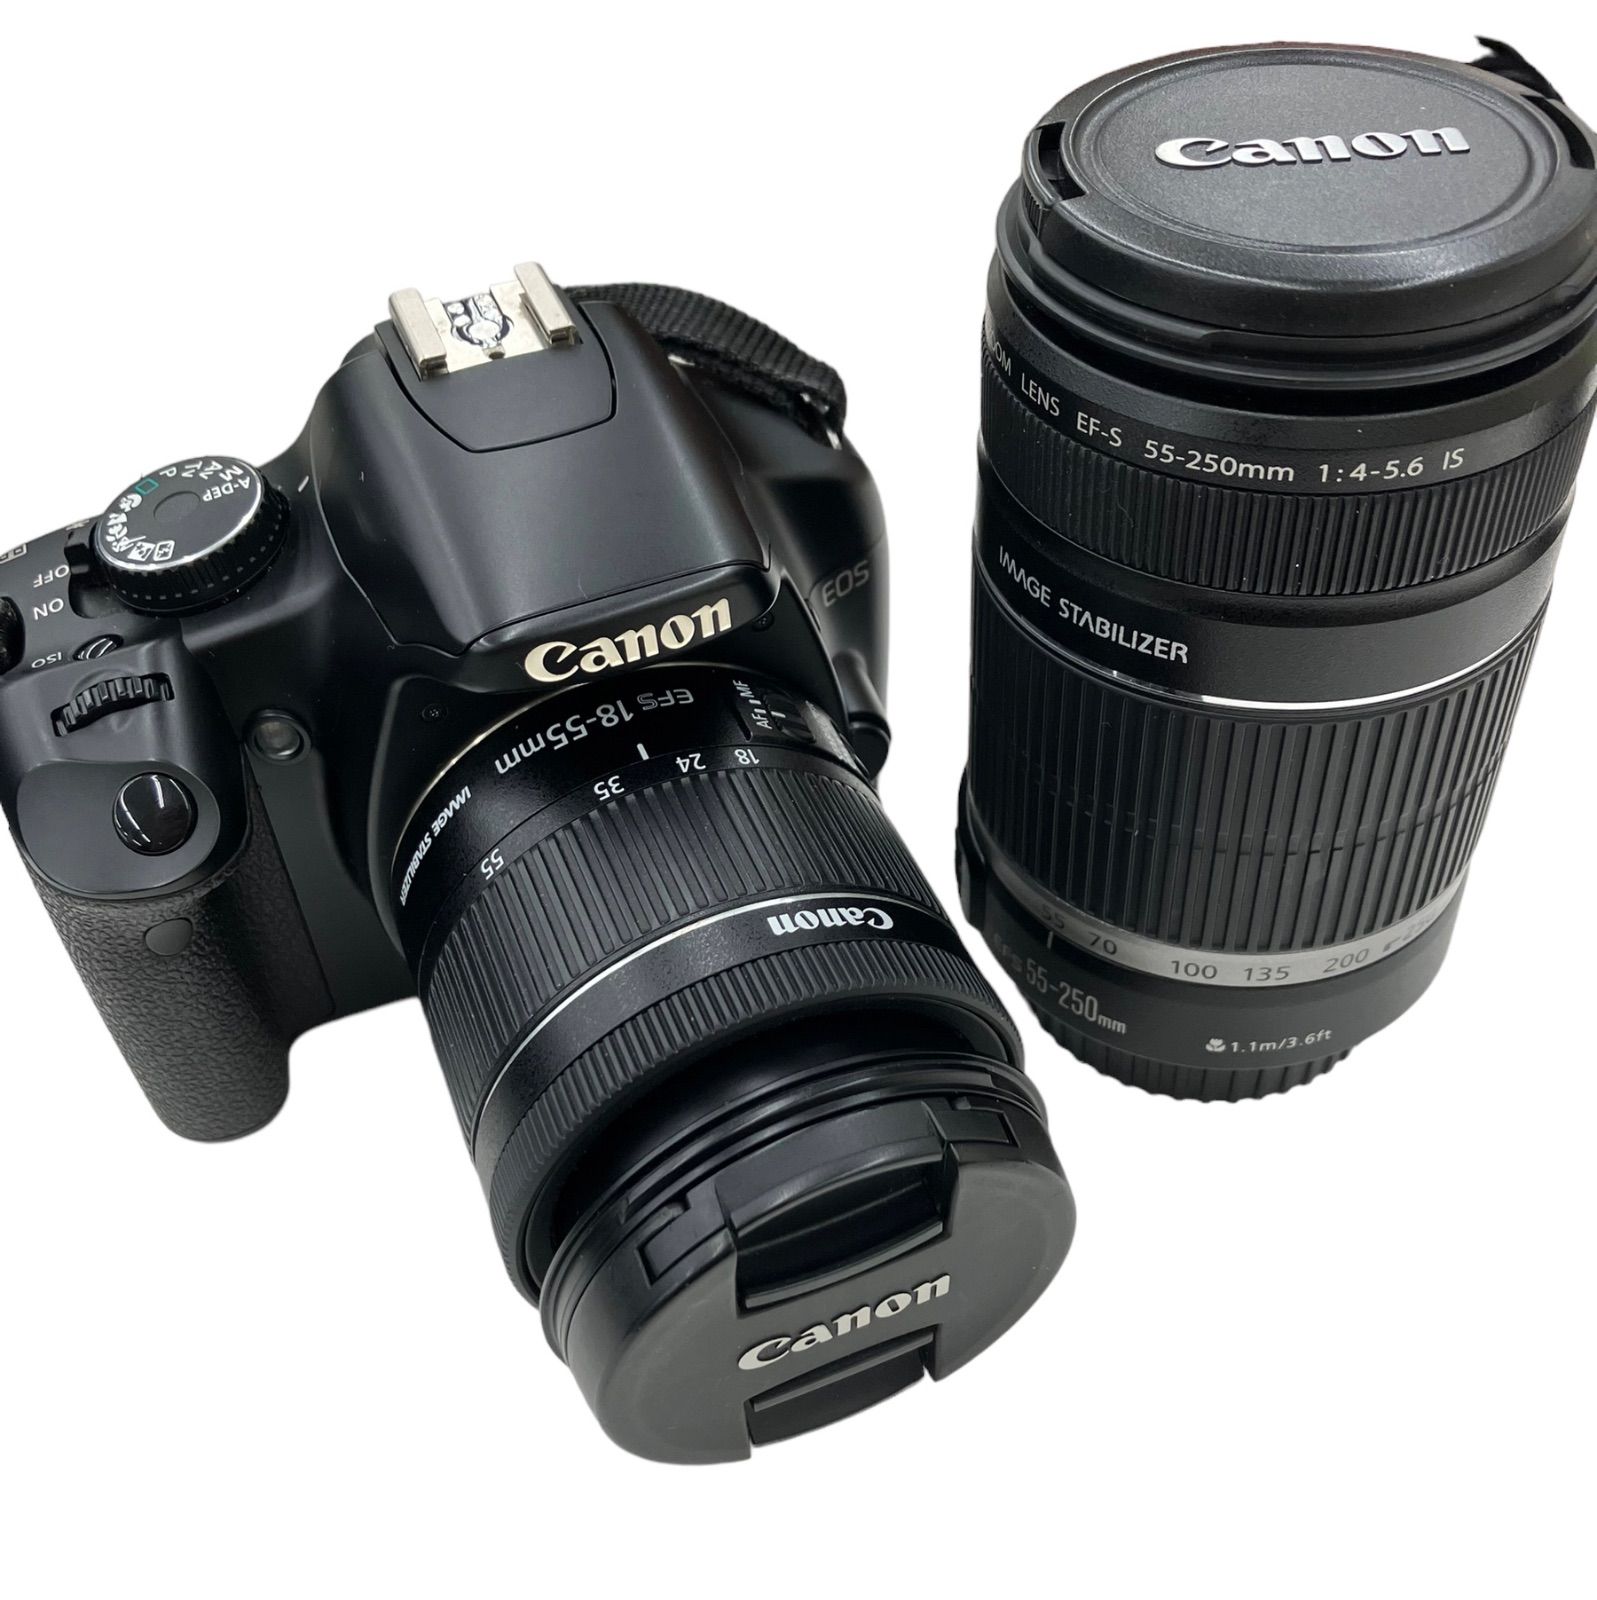 Canon EOS Kiss X2 DS126181 一眼レフカメラ - デジタルカメラ